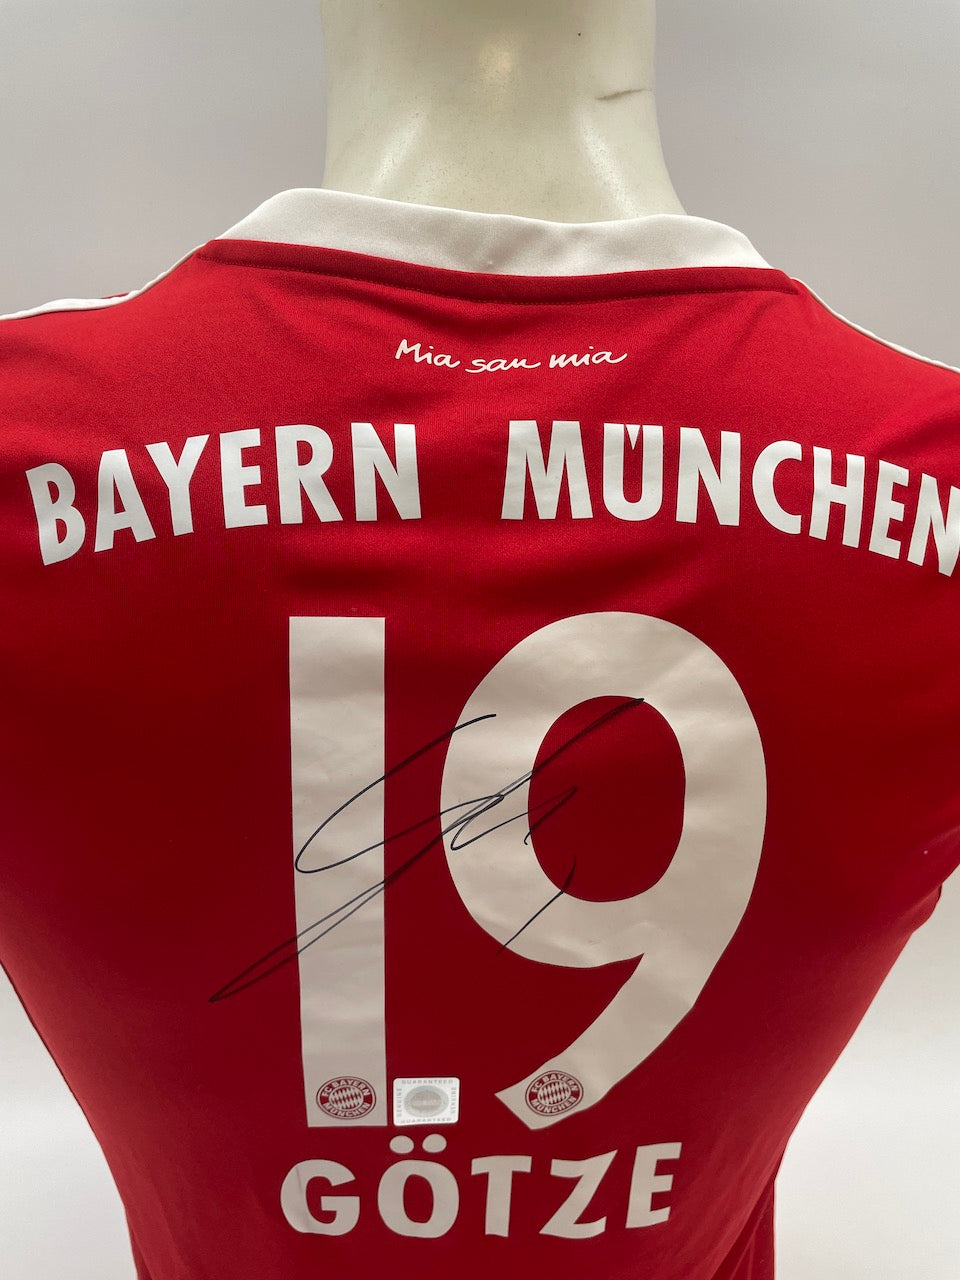 Bayern München Frauentrikot Mario Götze signiert Autogramme Bundesliga Adidas M